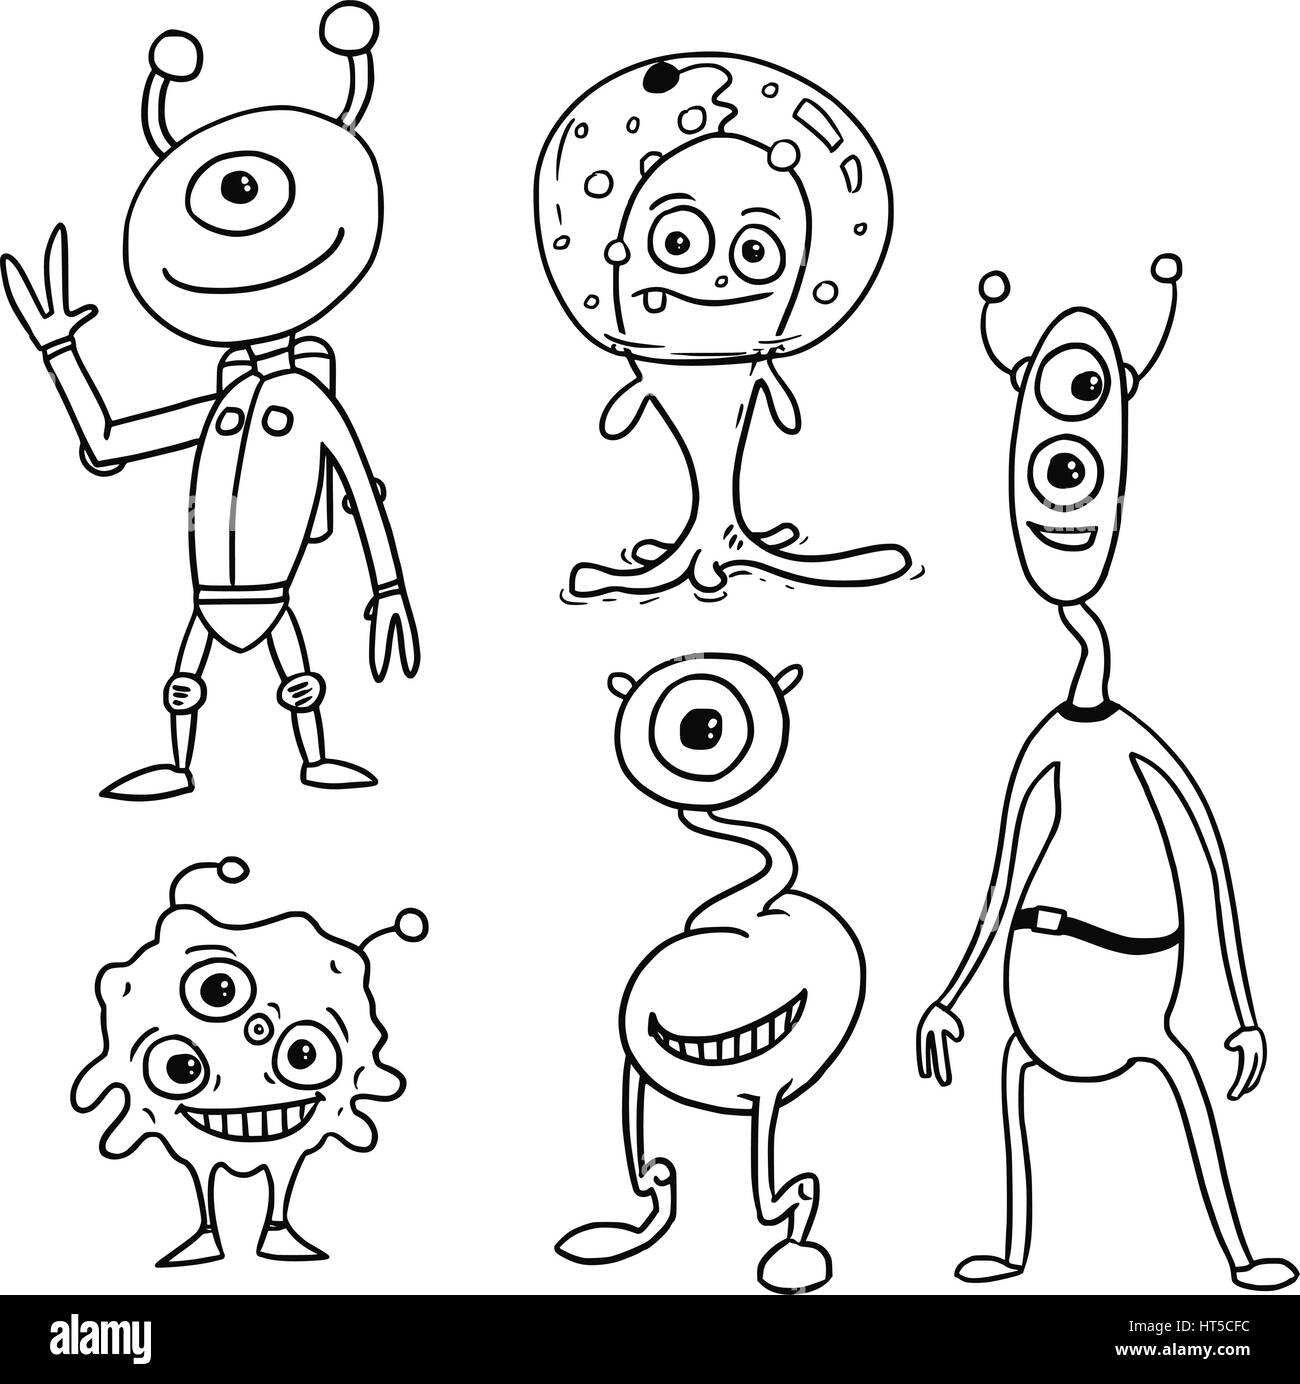 Cartoon Vector Set 05 des astronautes étrangers amical Illustration de Vecteur